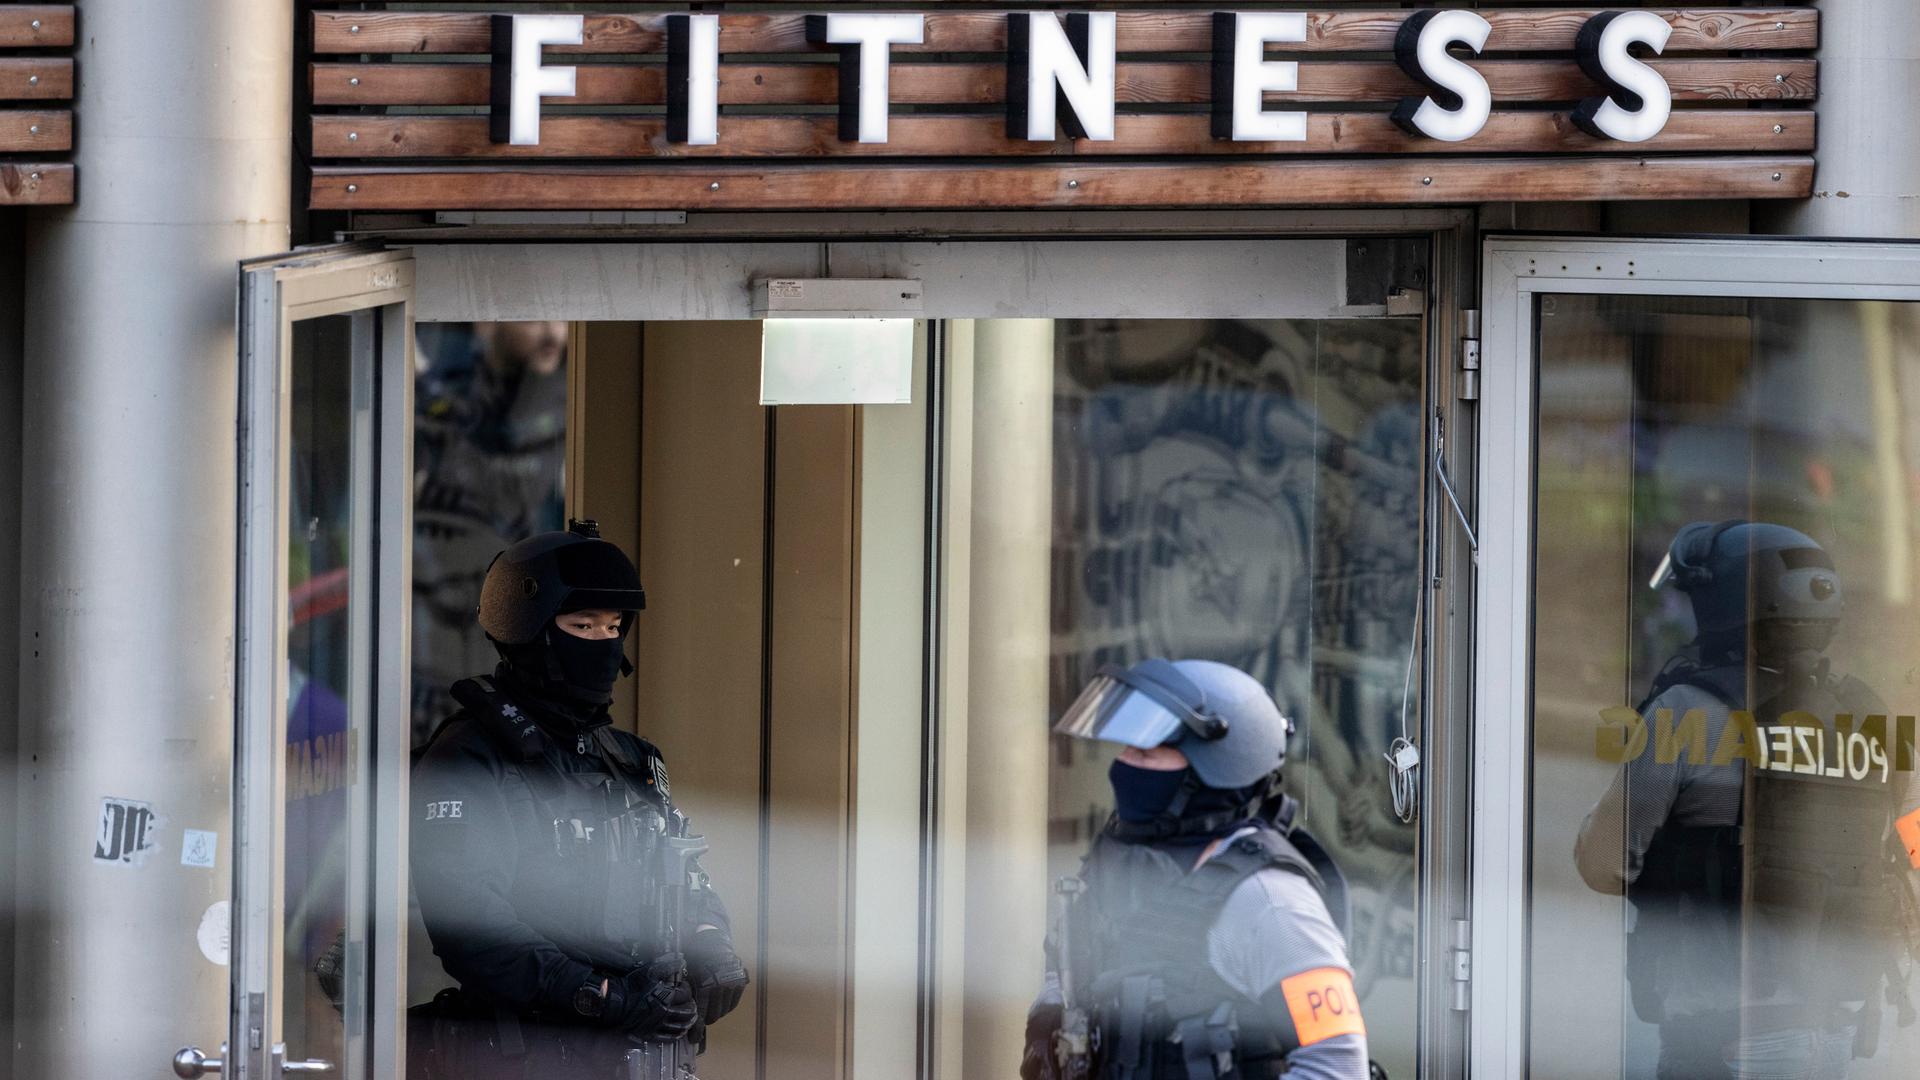 Polizist sind in Duisburg im Einsatz. Bei einer Attacke in einem Fitnessstudio in der Duisburger Innenstadt sind am Dienstagabend mehrere Personen schwer verletzt worden. Das teilte ein Polizeisprecher in Duisburg mit.